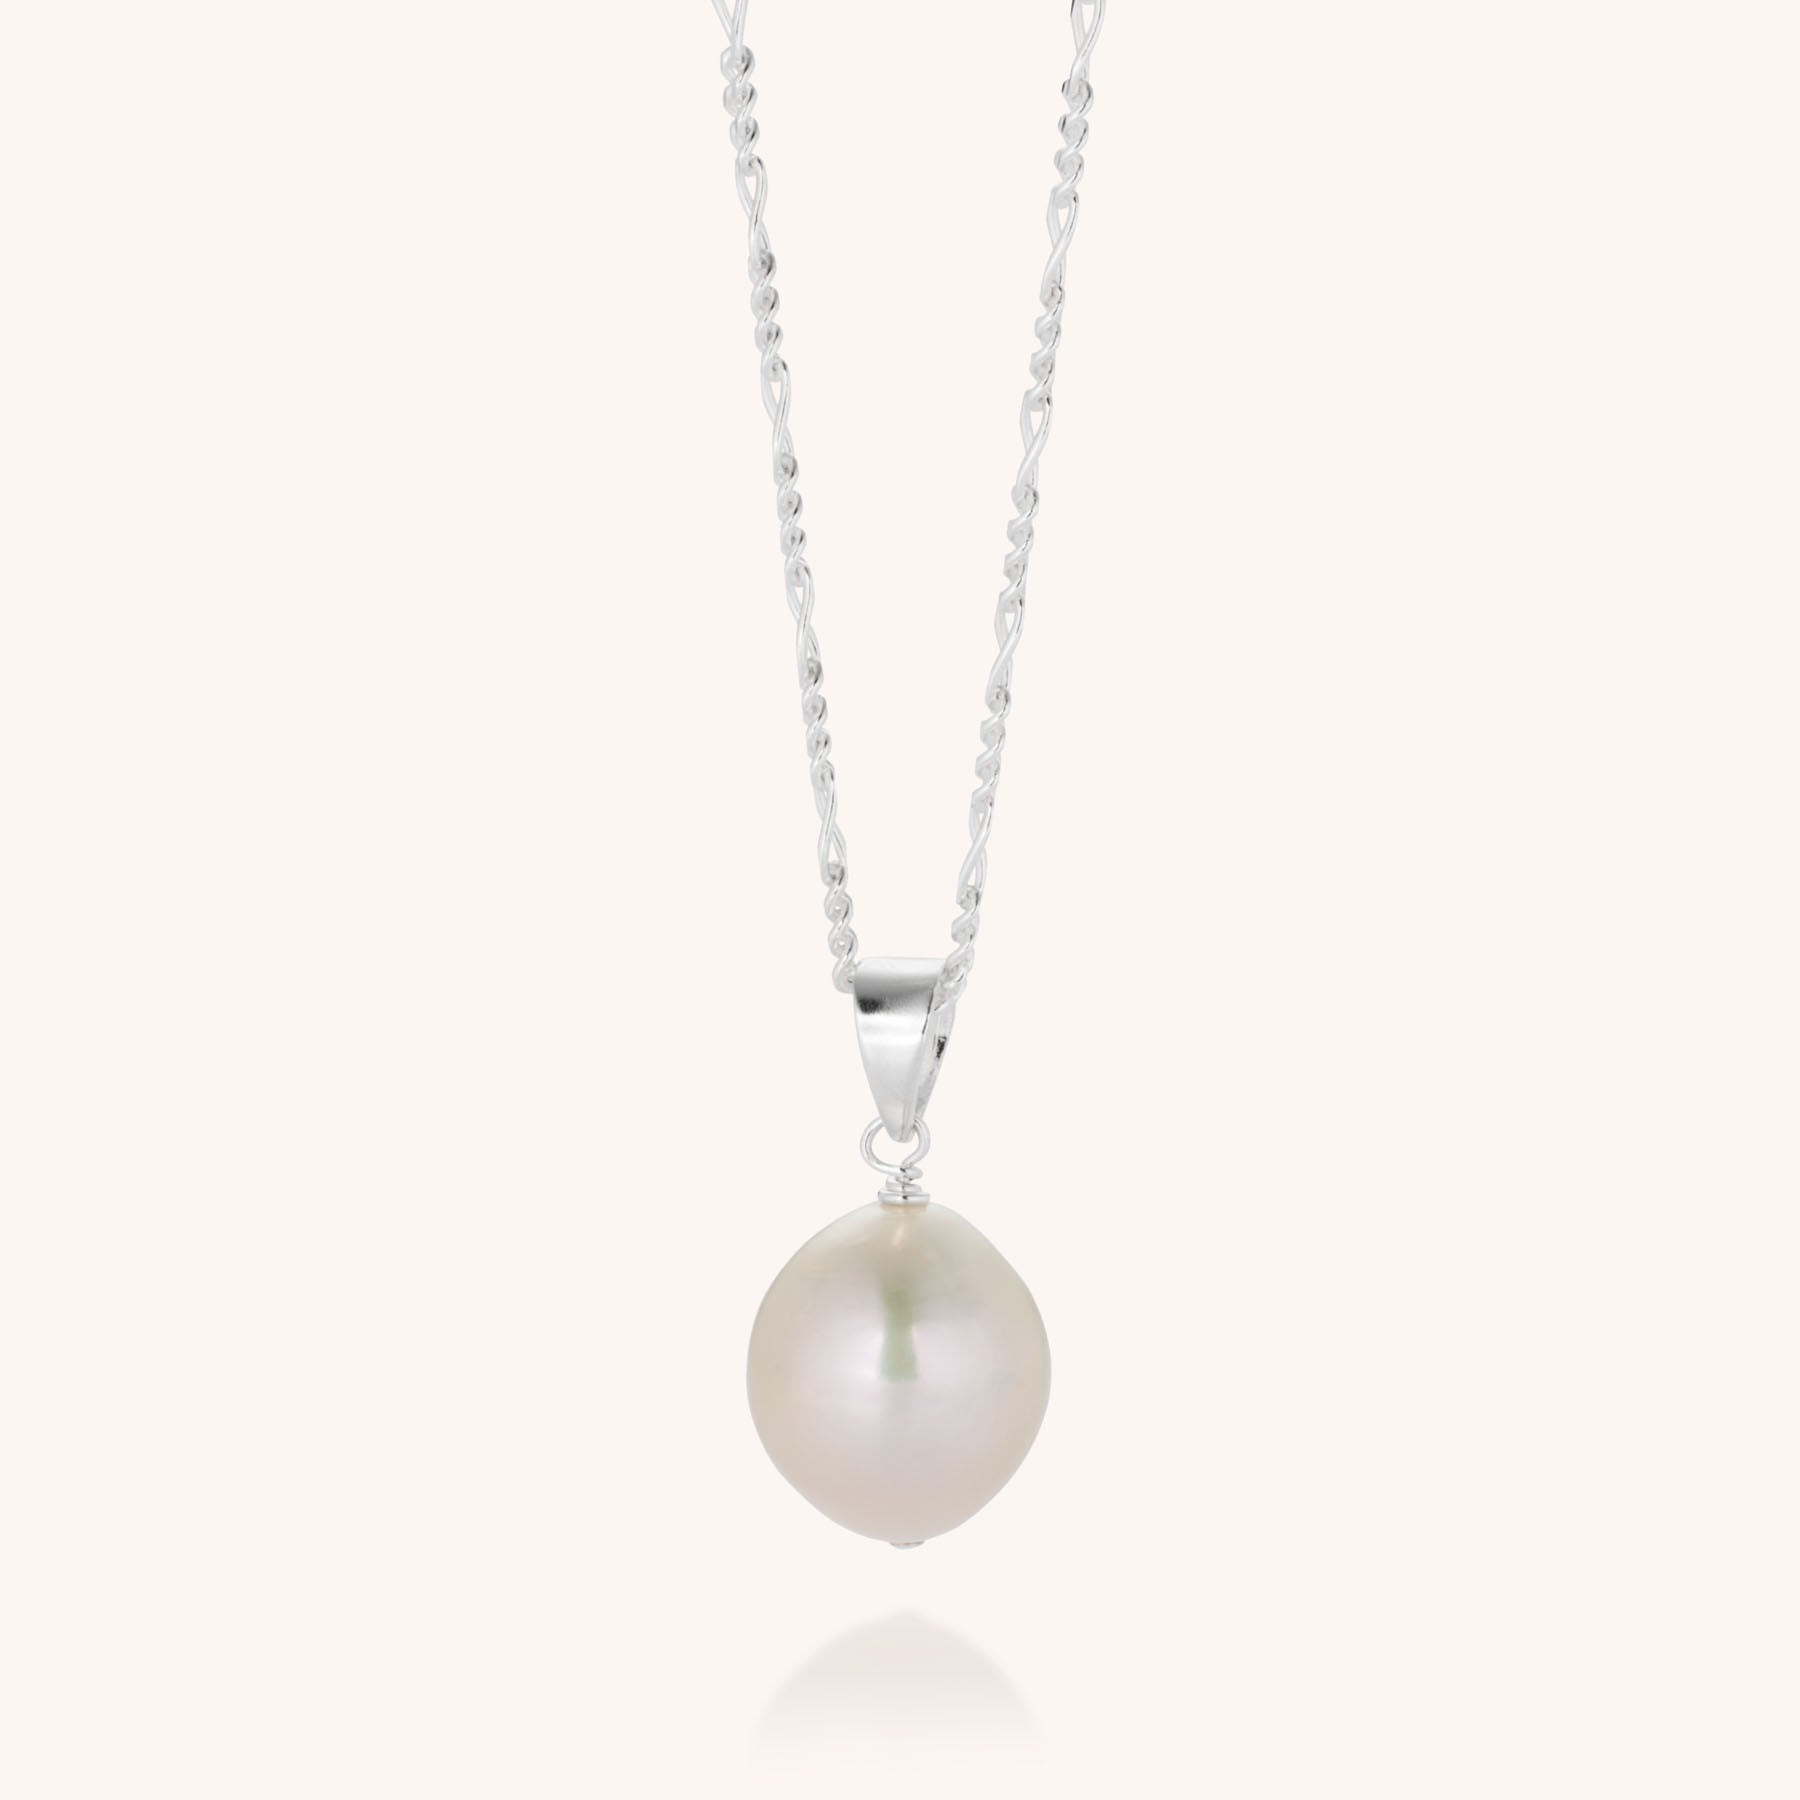 Ellen Large Pearl Necklace